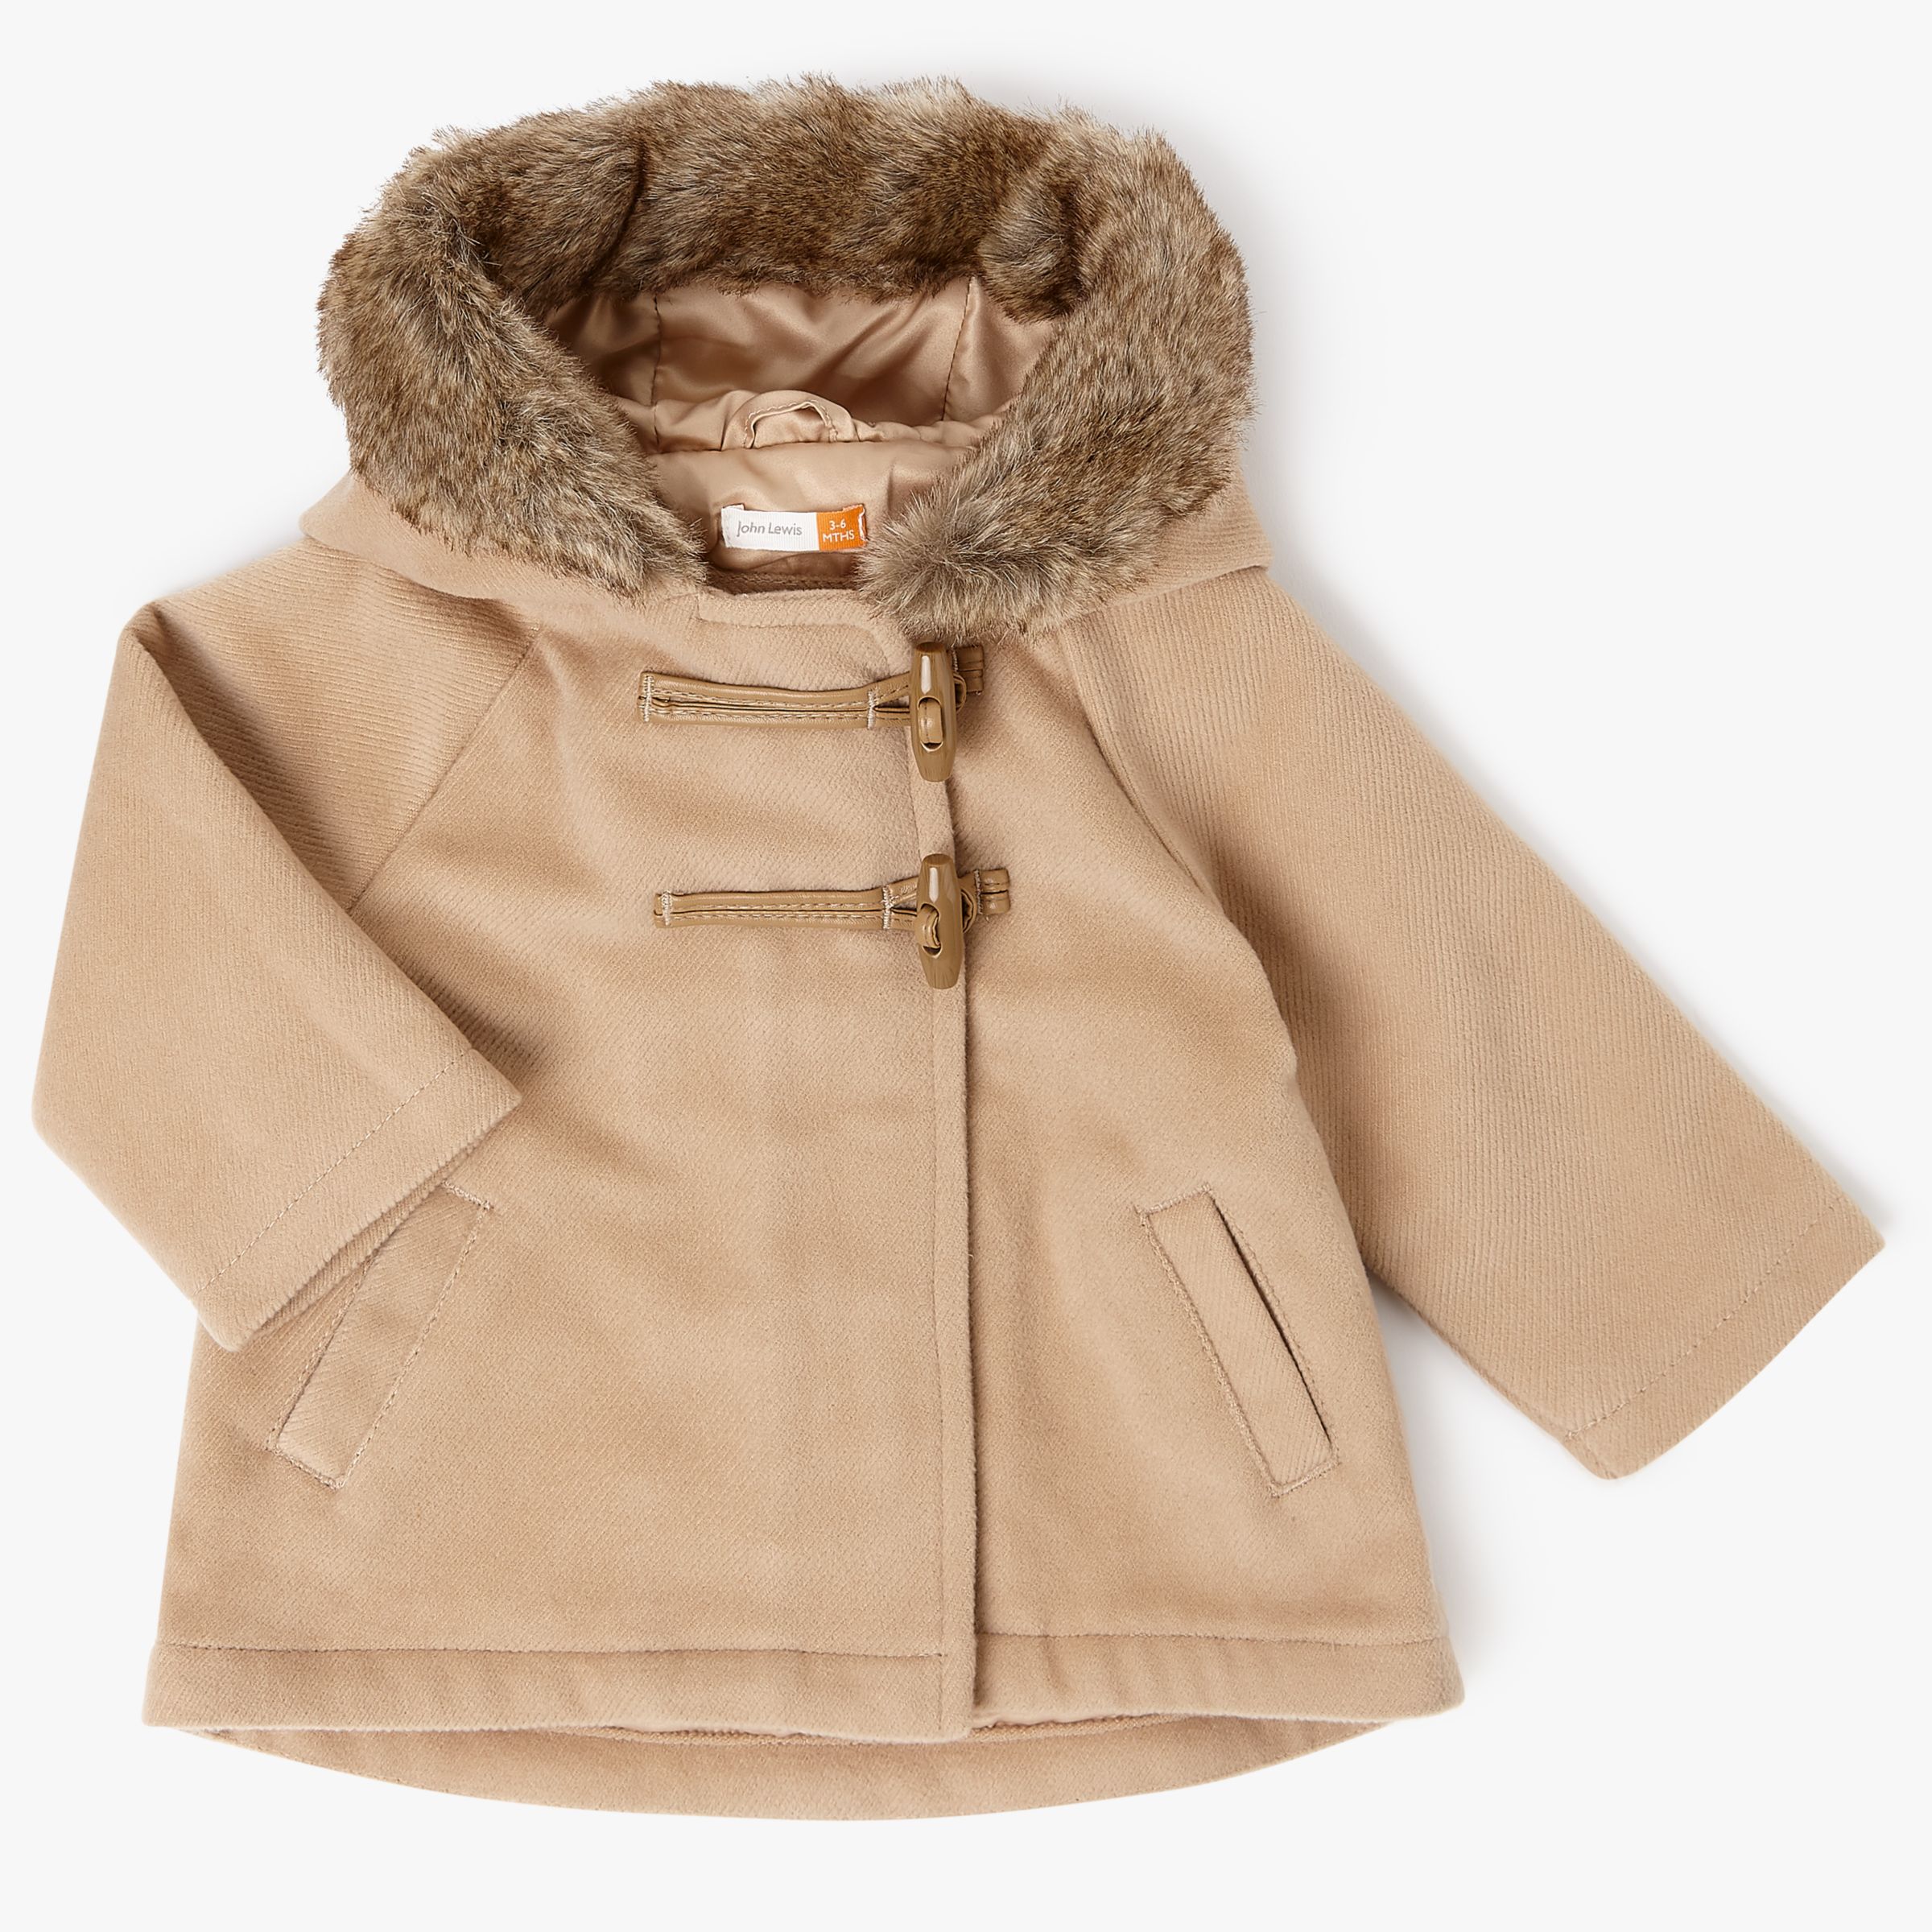 baby coat online